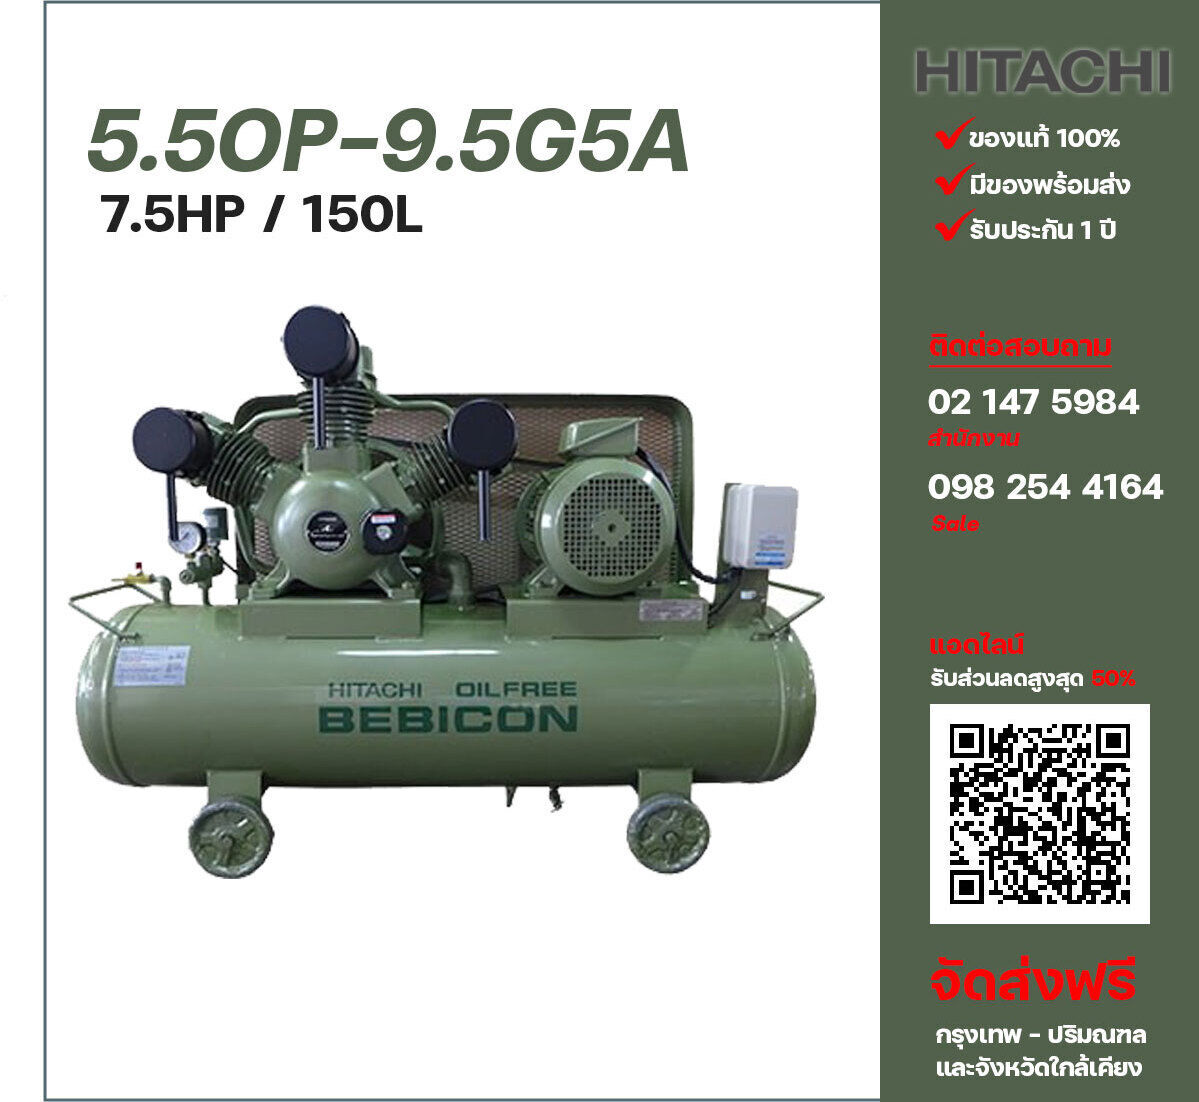 ปั๊มลมฮิตาชิ HITACHI รุ่นไม่ใช้น้ำมัน 5.5OP-9.5G5A380V ปั๊มลมลูกสูบ ขนาด 3 สูบ 7.5 แรงม้า 150 ลิตร Hitachi พร้อมมอเตอร์ Hitachi ไฟ 380V ส่งฟรี กรุงเทพฯ-ปริมณฑล รับประกัน 1 ปี